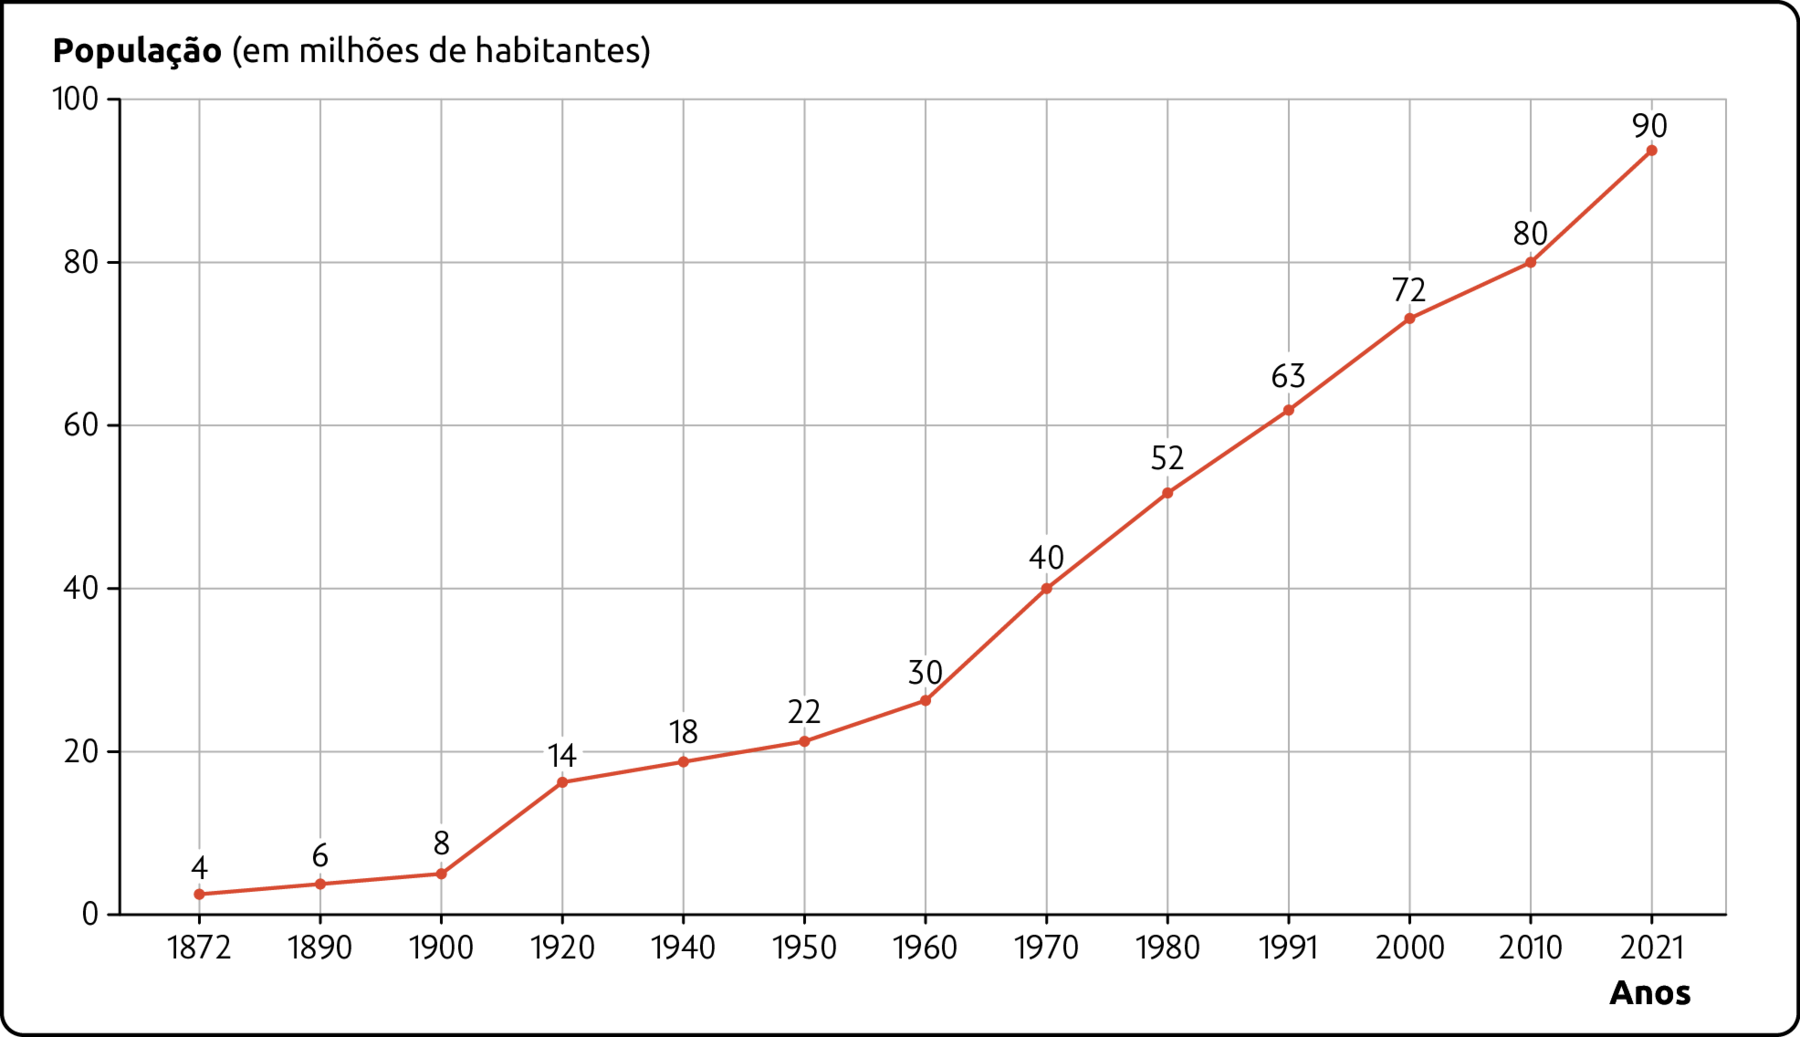 Gráfico. Evolução do crescimento populacional da Região Sudeste (1872-2021). População (em milhões de habitantes). 1872: 4. 1890: 6. 1900: 8. 1920: 14. 1940: 18. 1950: 22. 1960: 30. 1970: 40. 1980: 52. 1991: 63. 2000: 72. 2010: 80. 2021: 90.